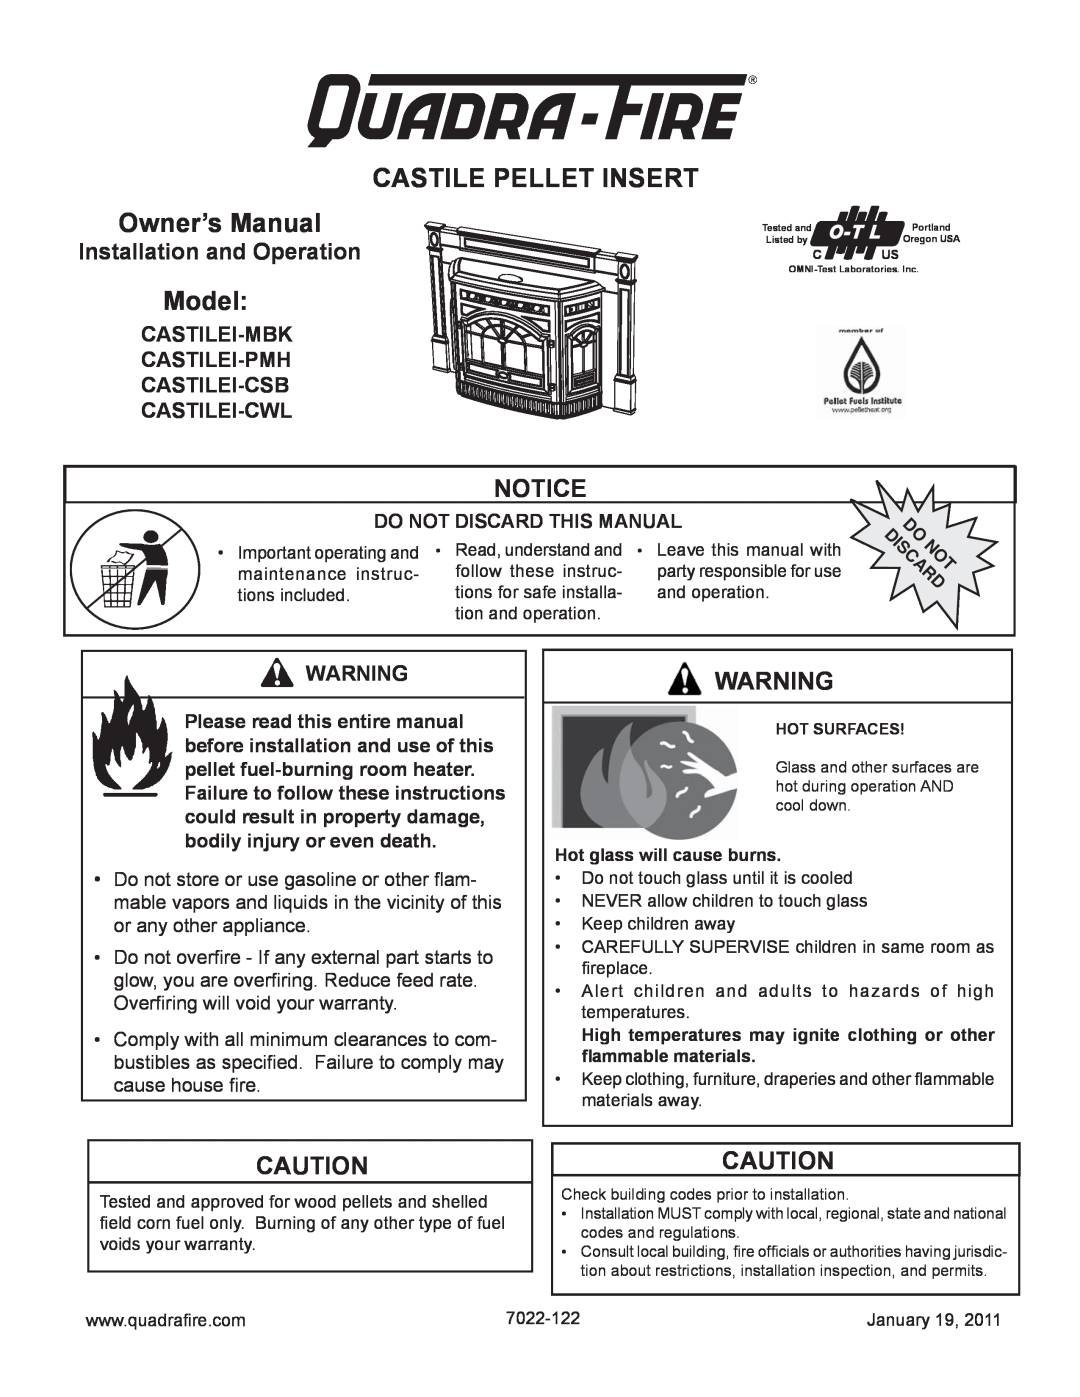 Quadra-Fire CASTILEI-MBK owner manual Notice, Installation and Operation, Castilei-Mbk Castilei-Pmh Castilei-Csb, Model 